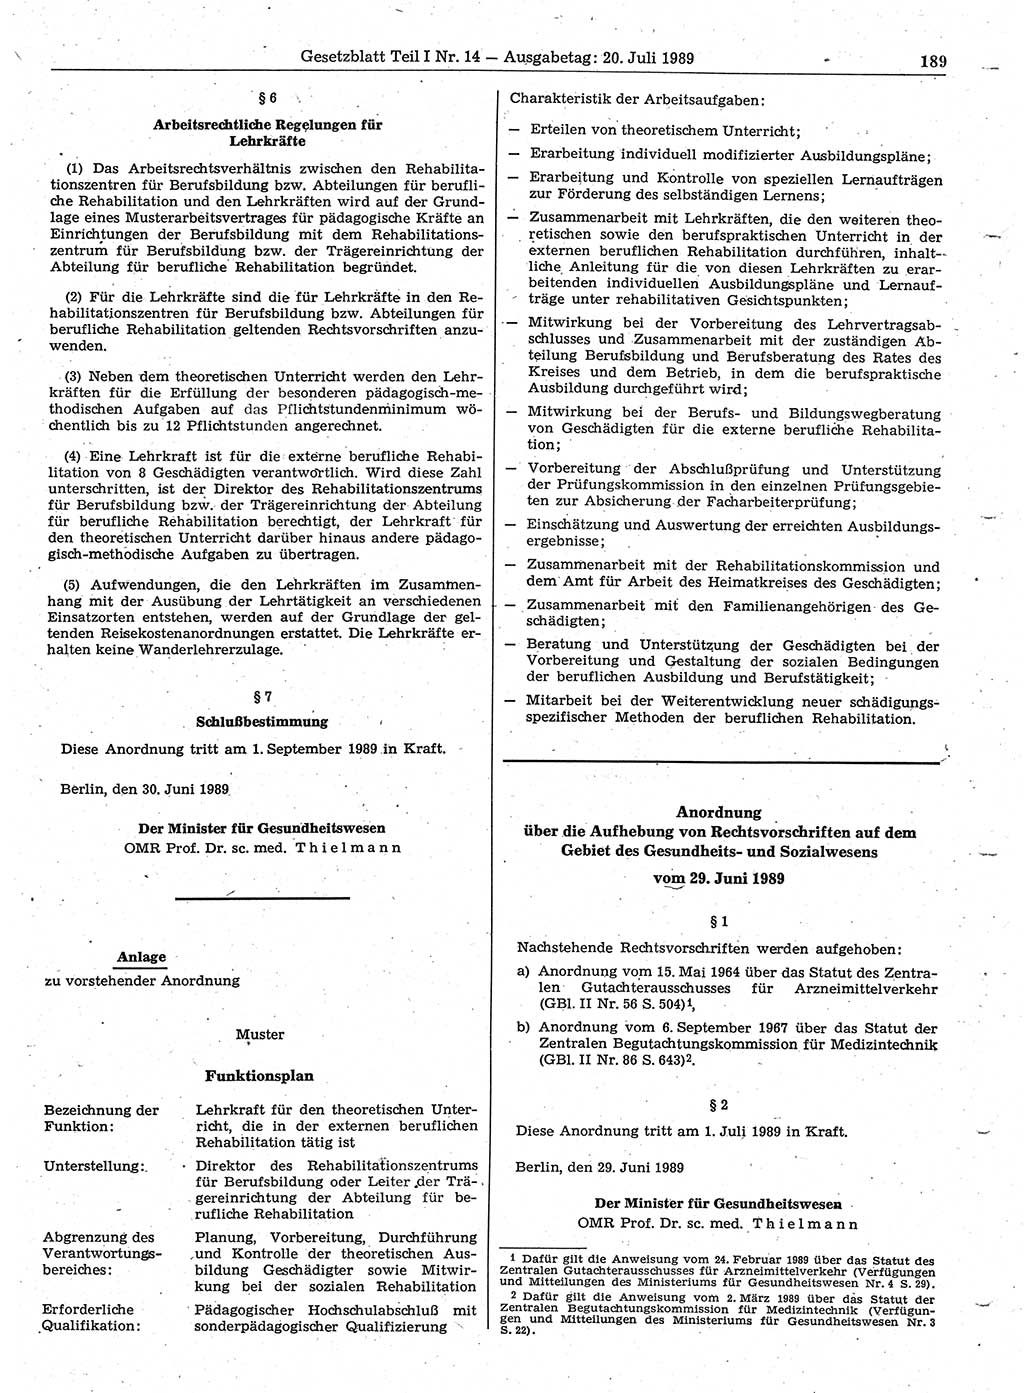 Gesetzblatt (GBl.) der Deutschen Demokratischen Republik (DDR) Teil Ⅰ 1989, Seite 189 (GBl. DDR Ⅰ 1989, S. 189)